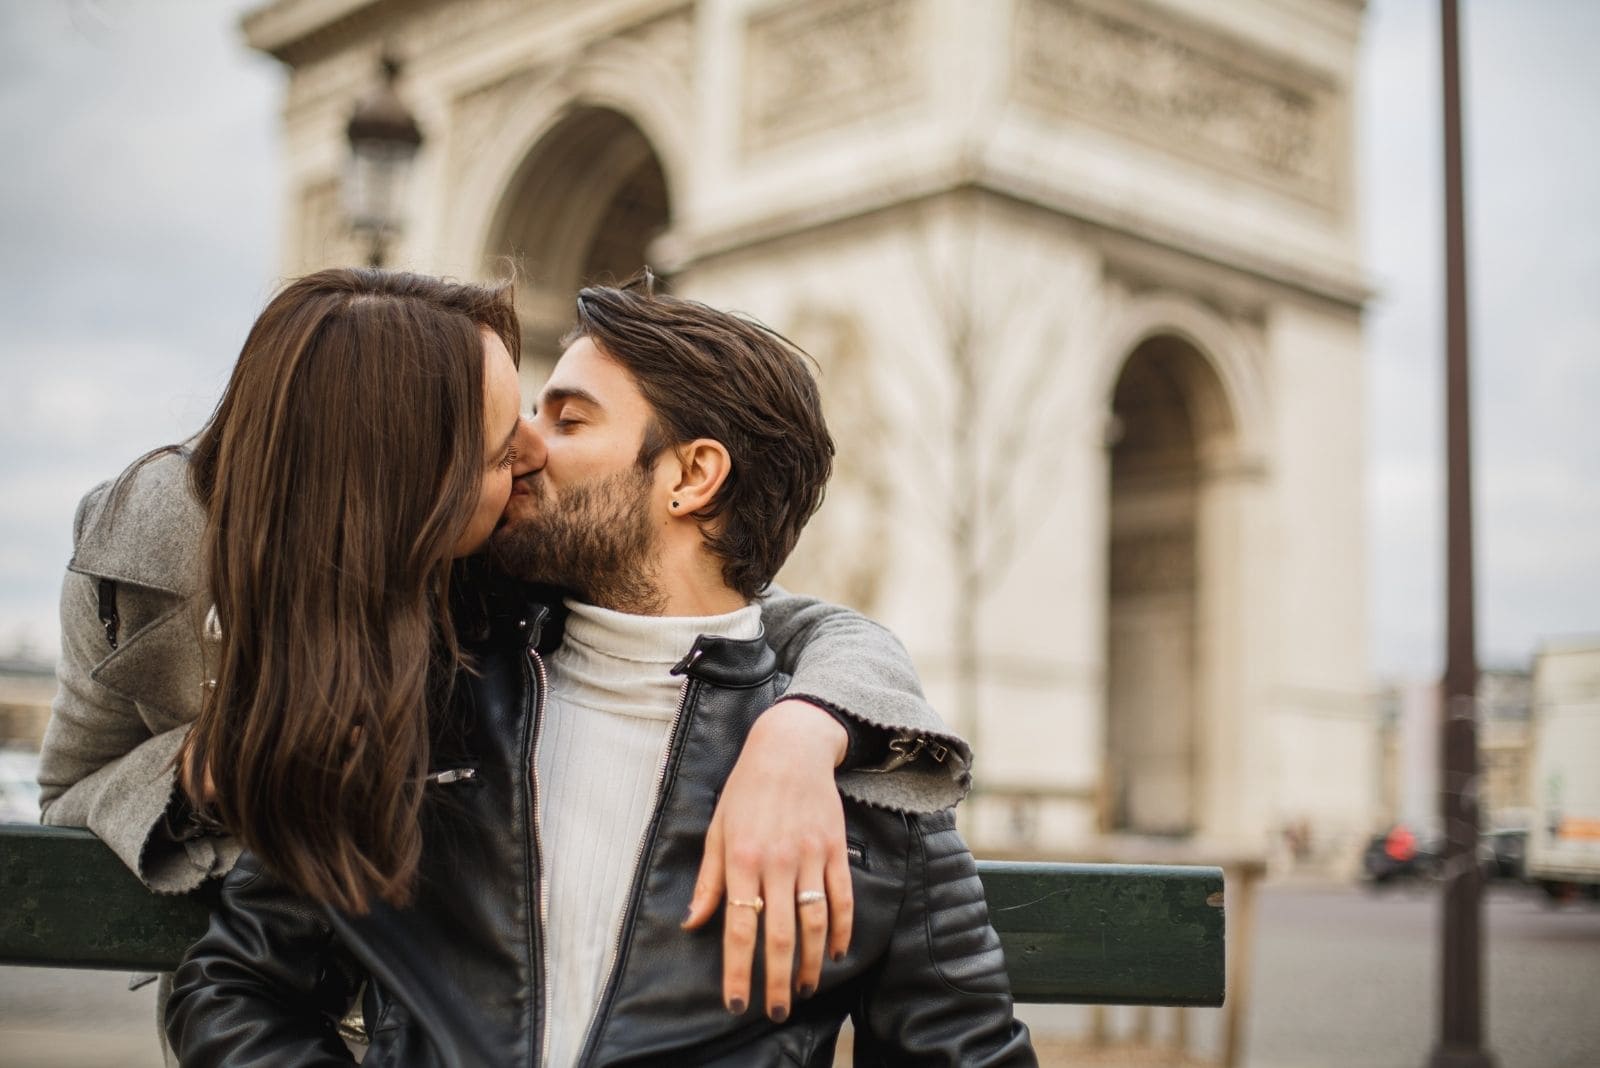 Uomo e donna parigini si baciano alla francese vicino all'arco di trionfo con l'uomo seduto sulla panchina